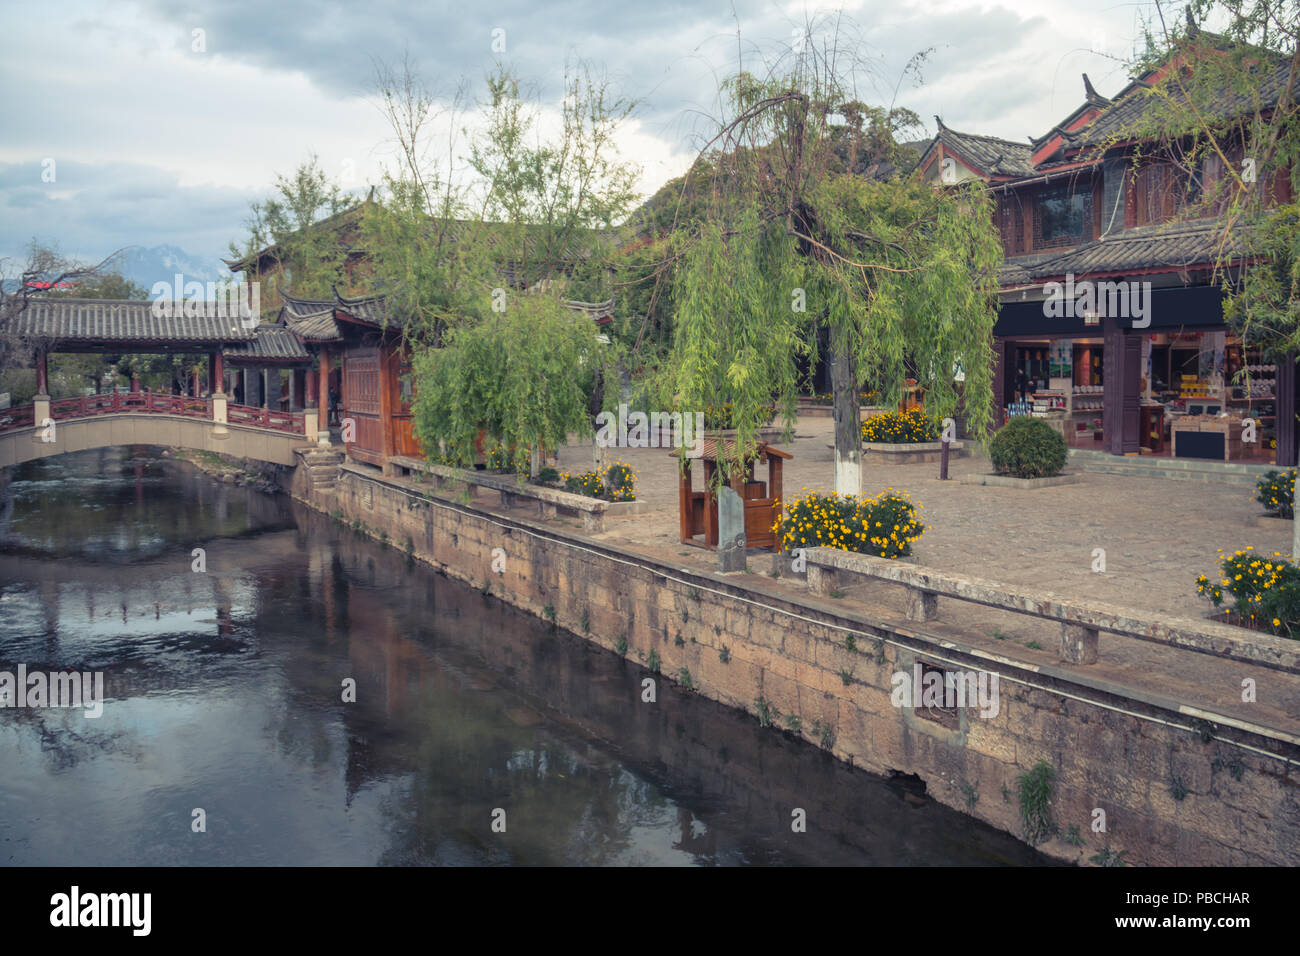 The streets of the ancient city of Lijiang, Yunnan, China Stock Photo